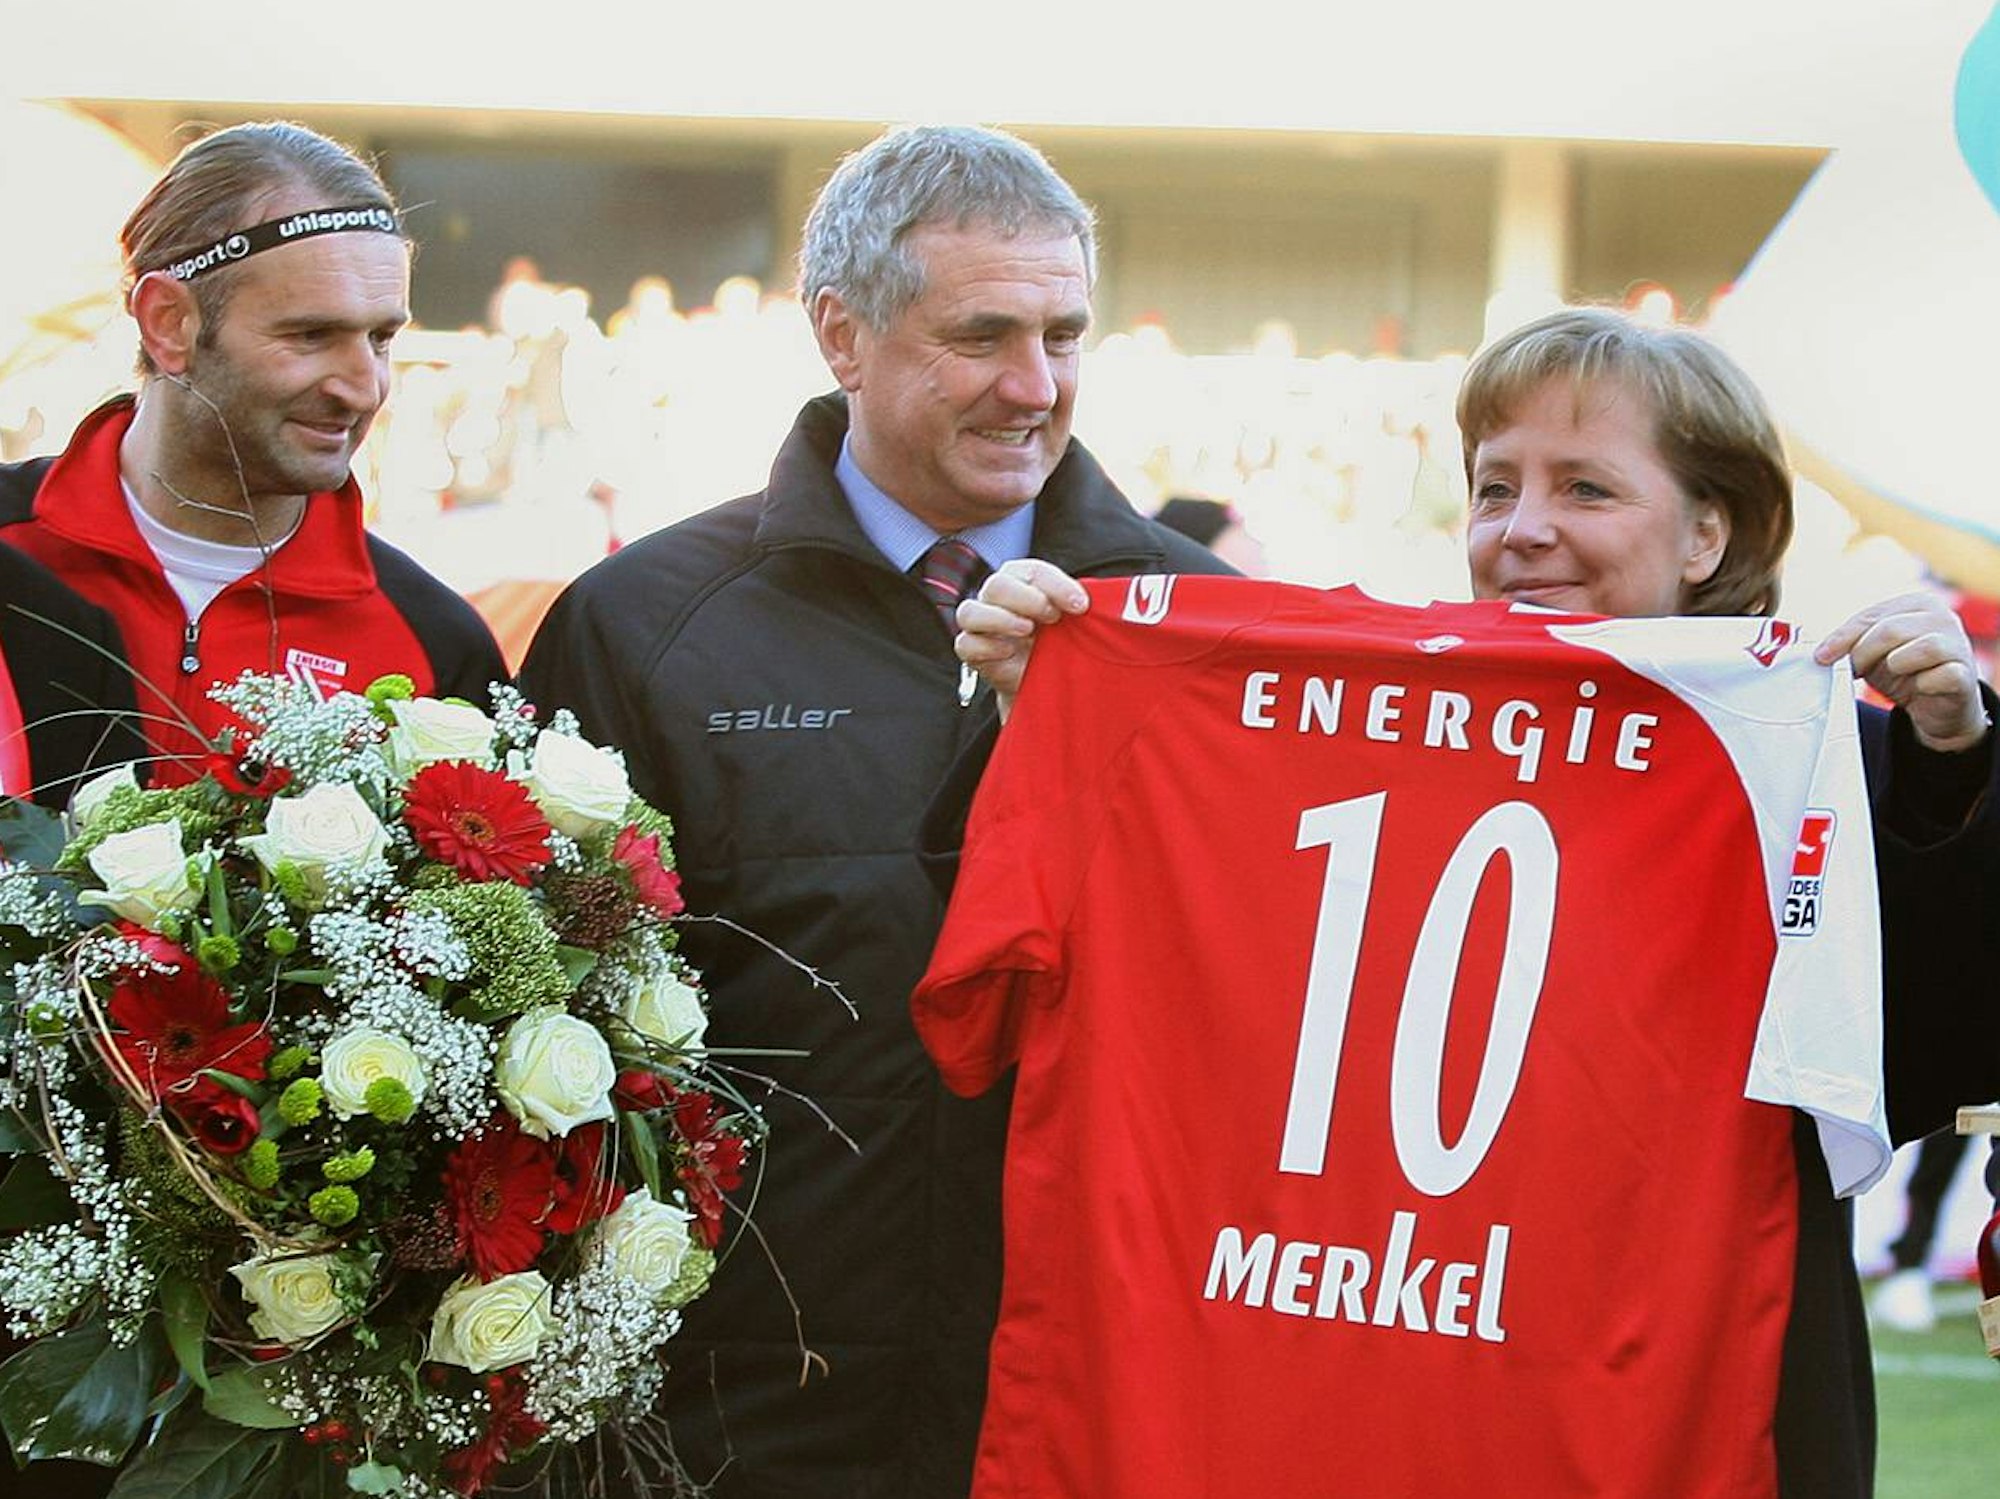 Angela Merkel hält ein Cottbus-Trikot mit der Nummer 10 hoch, Tomislav Piplica hält einen Blumenstrauß in den Händen.